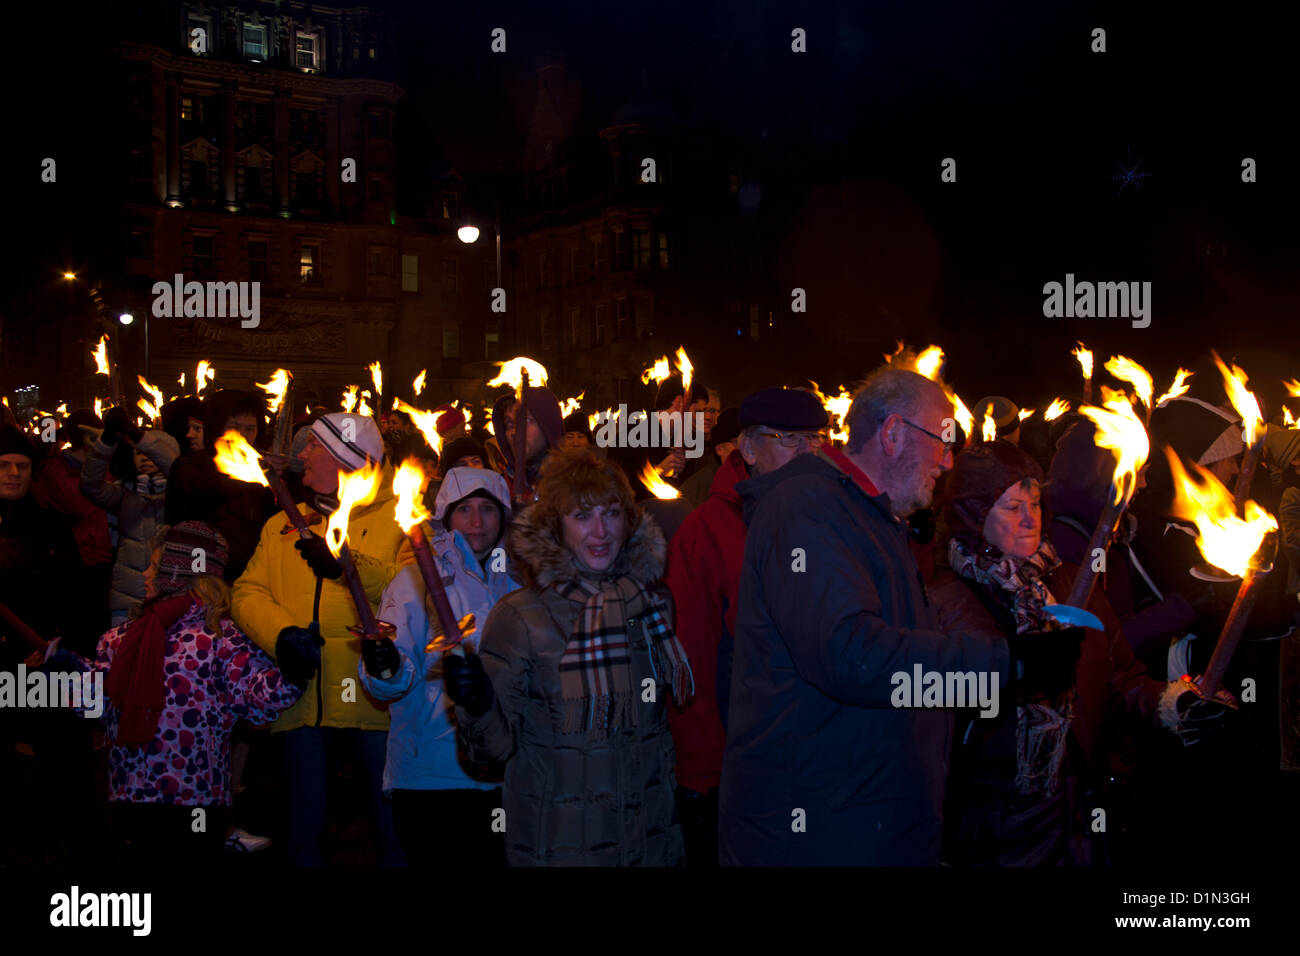 Edinburgh, UK. 30. Dezember 2012.  Fackelzug in Edinburgh, den Beginn der schottischen Hauptstadt 2012 Silvester mit Feuerwerk am Calton Hill Abschluss signalisieren Stockfoto